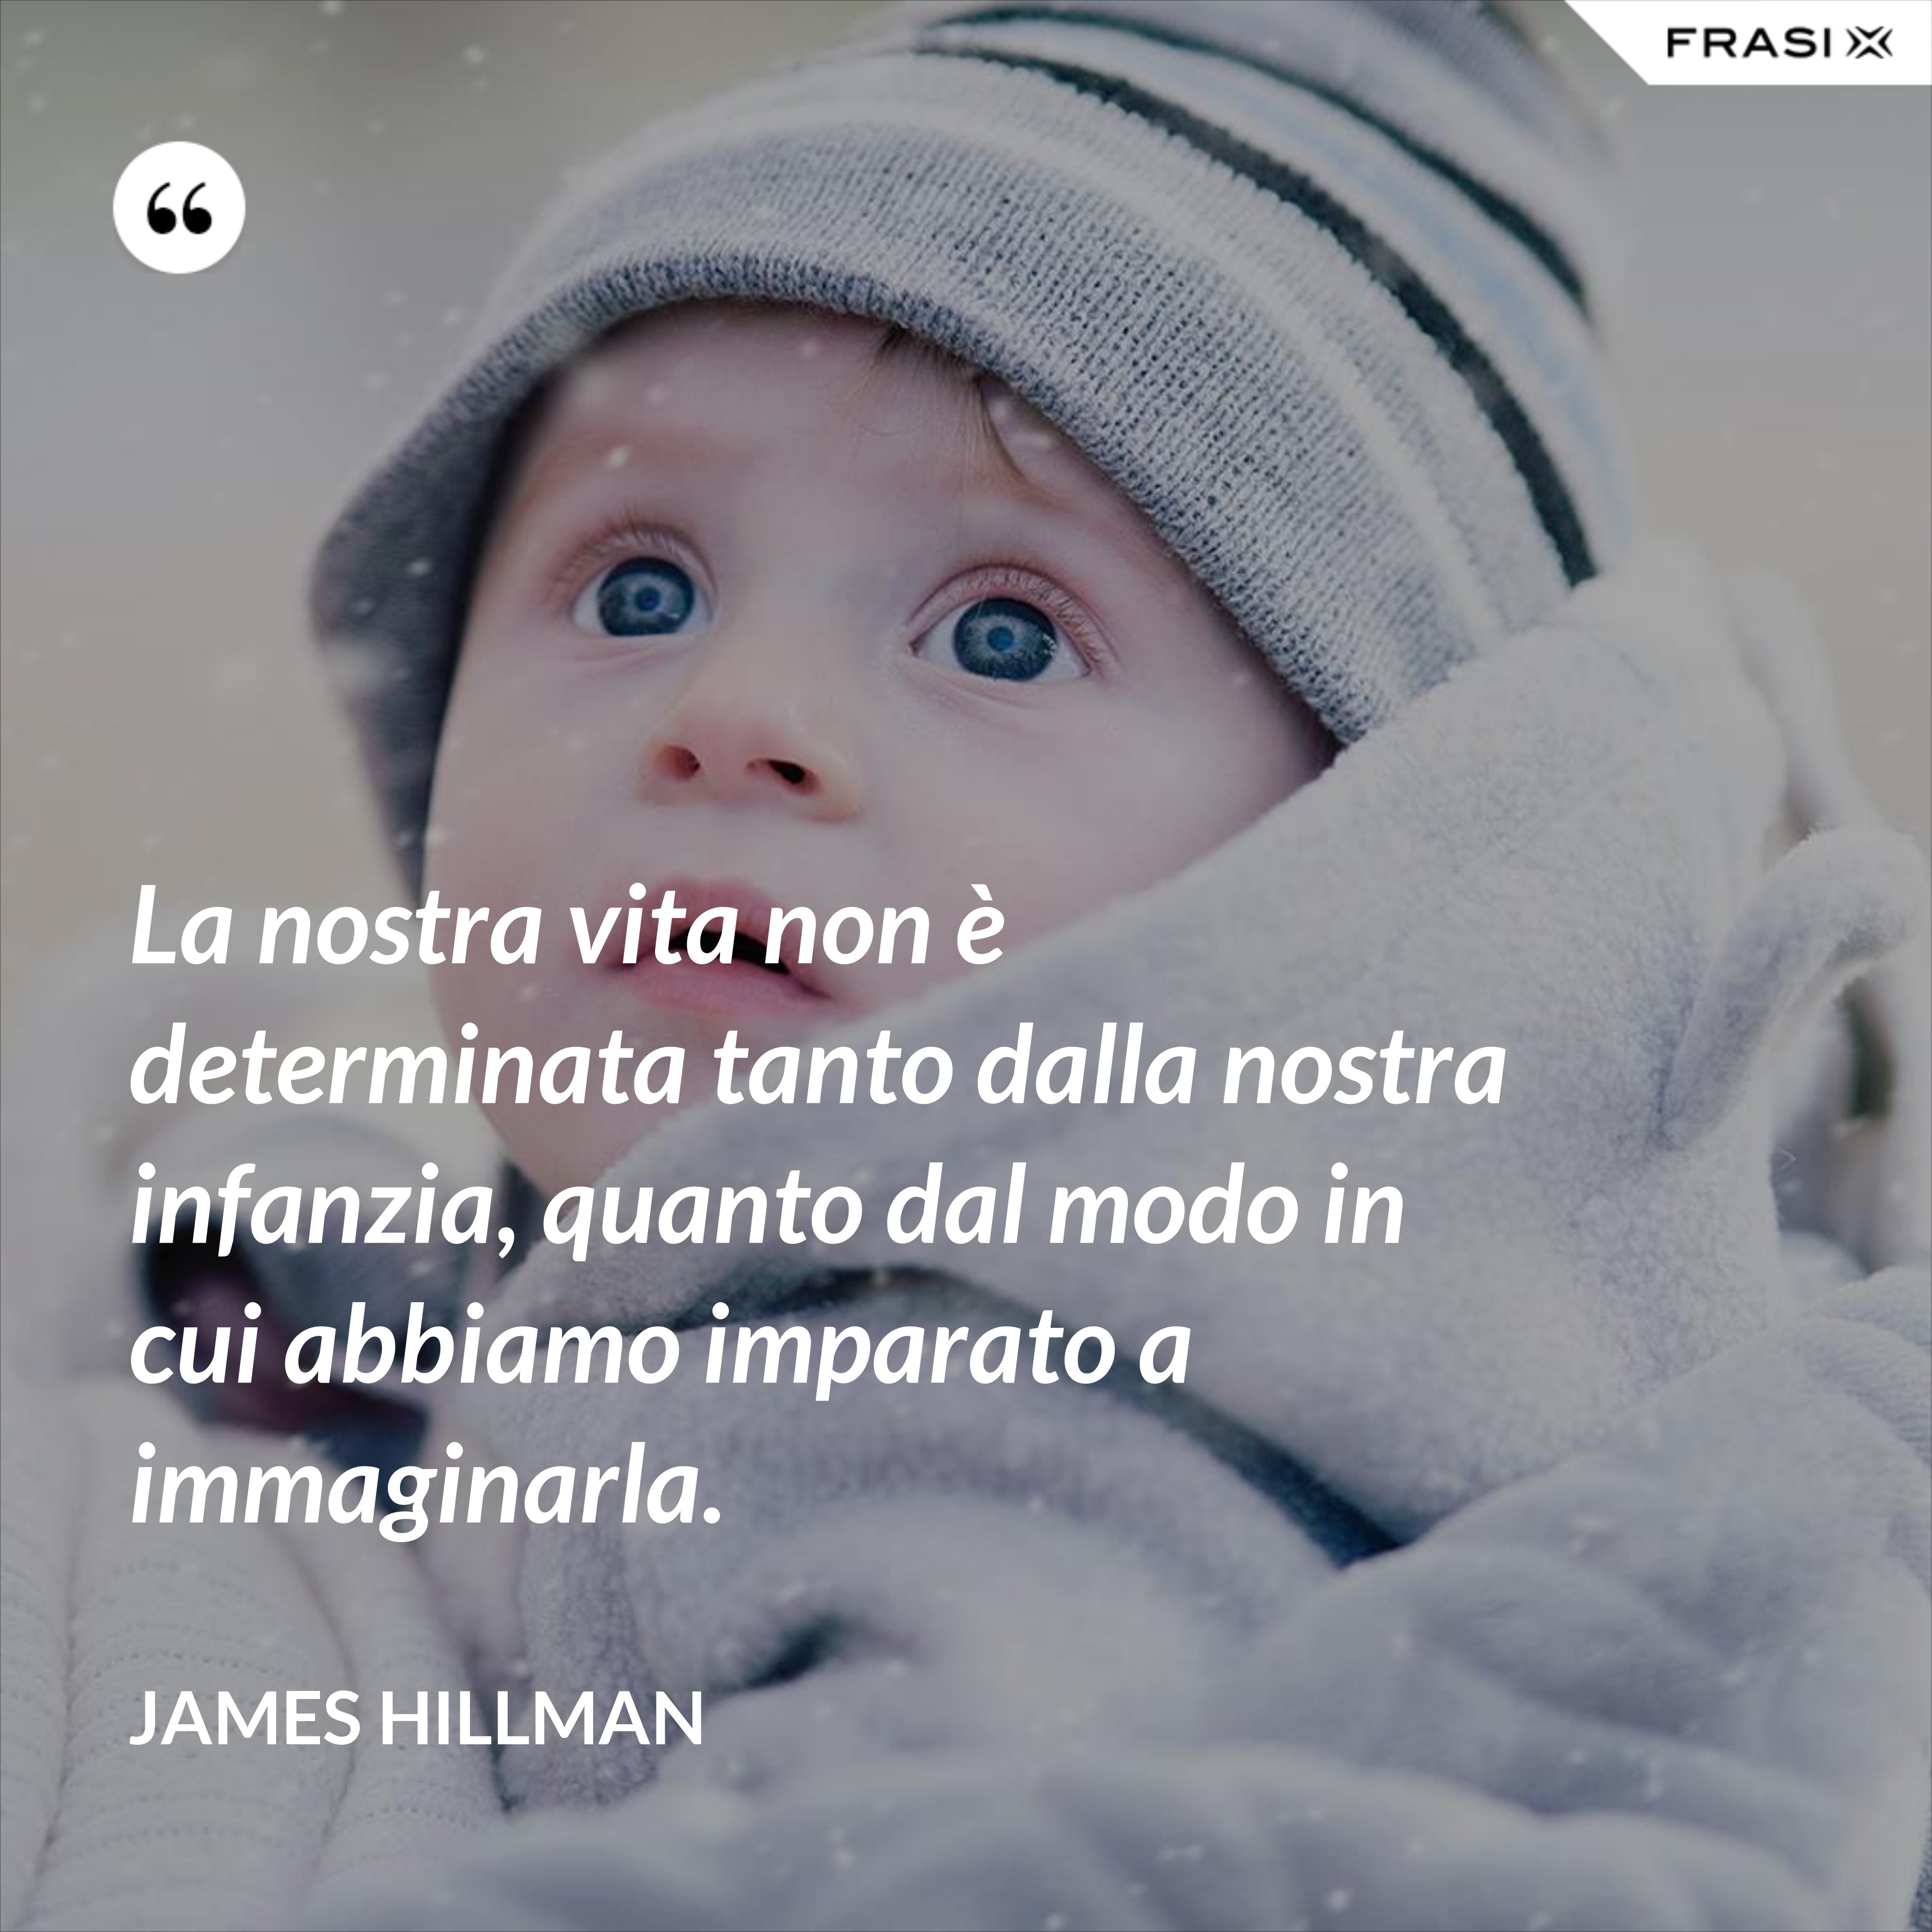 La nostra vita non è determinata tanto dalla nostra infanzia, quanto dal modo in cui abbiamo imparato a immaginarla. - James Hillman